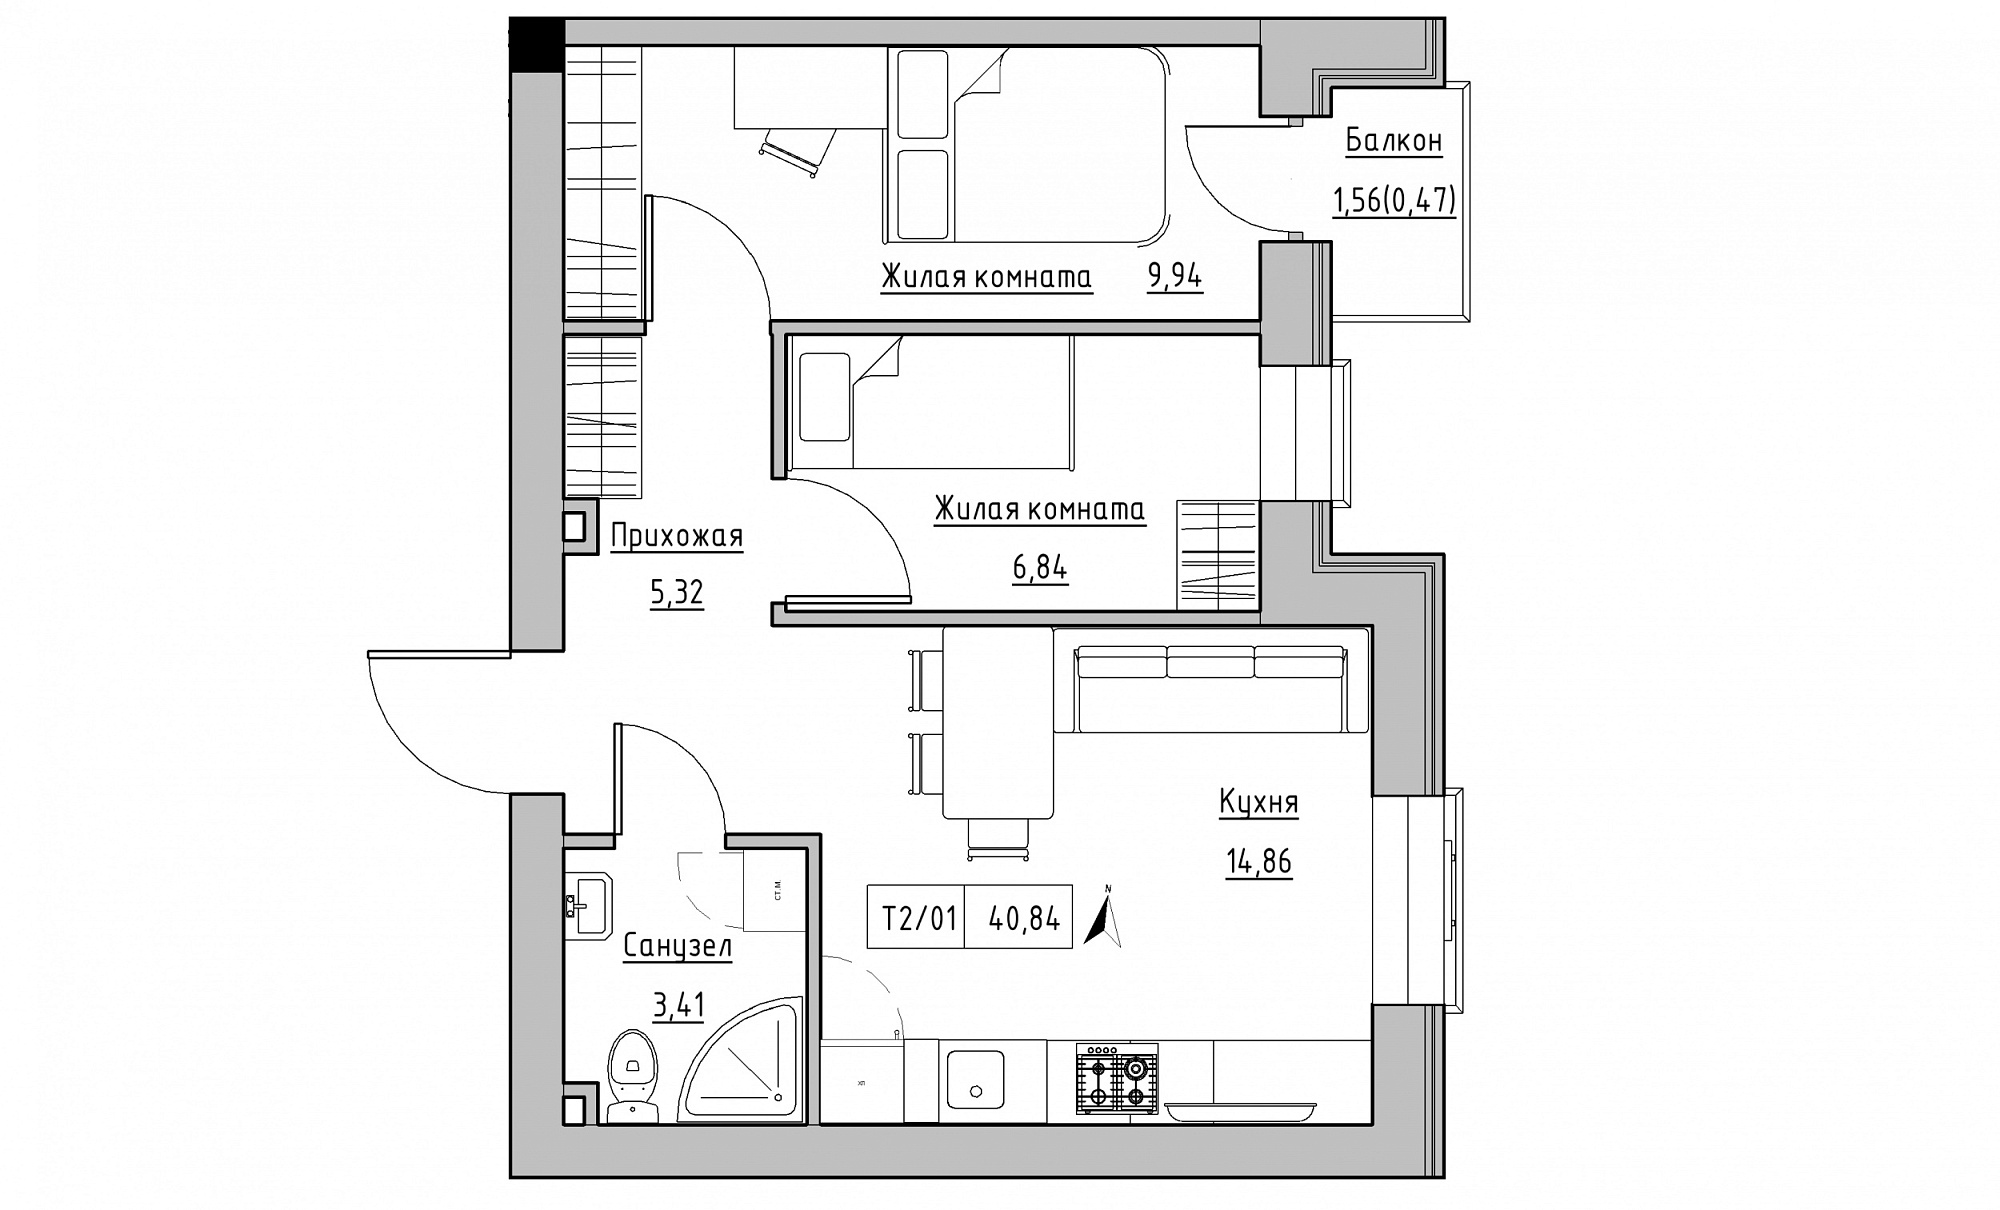 Планування 2-к квартира площею 40.84м2, KS-015-02/0006.